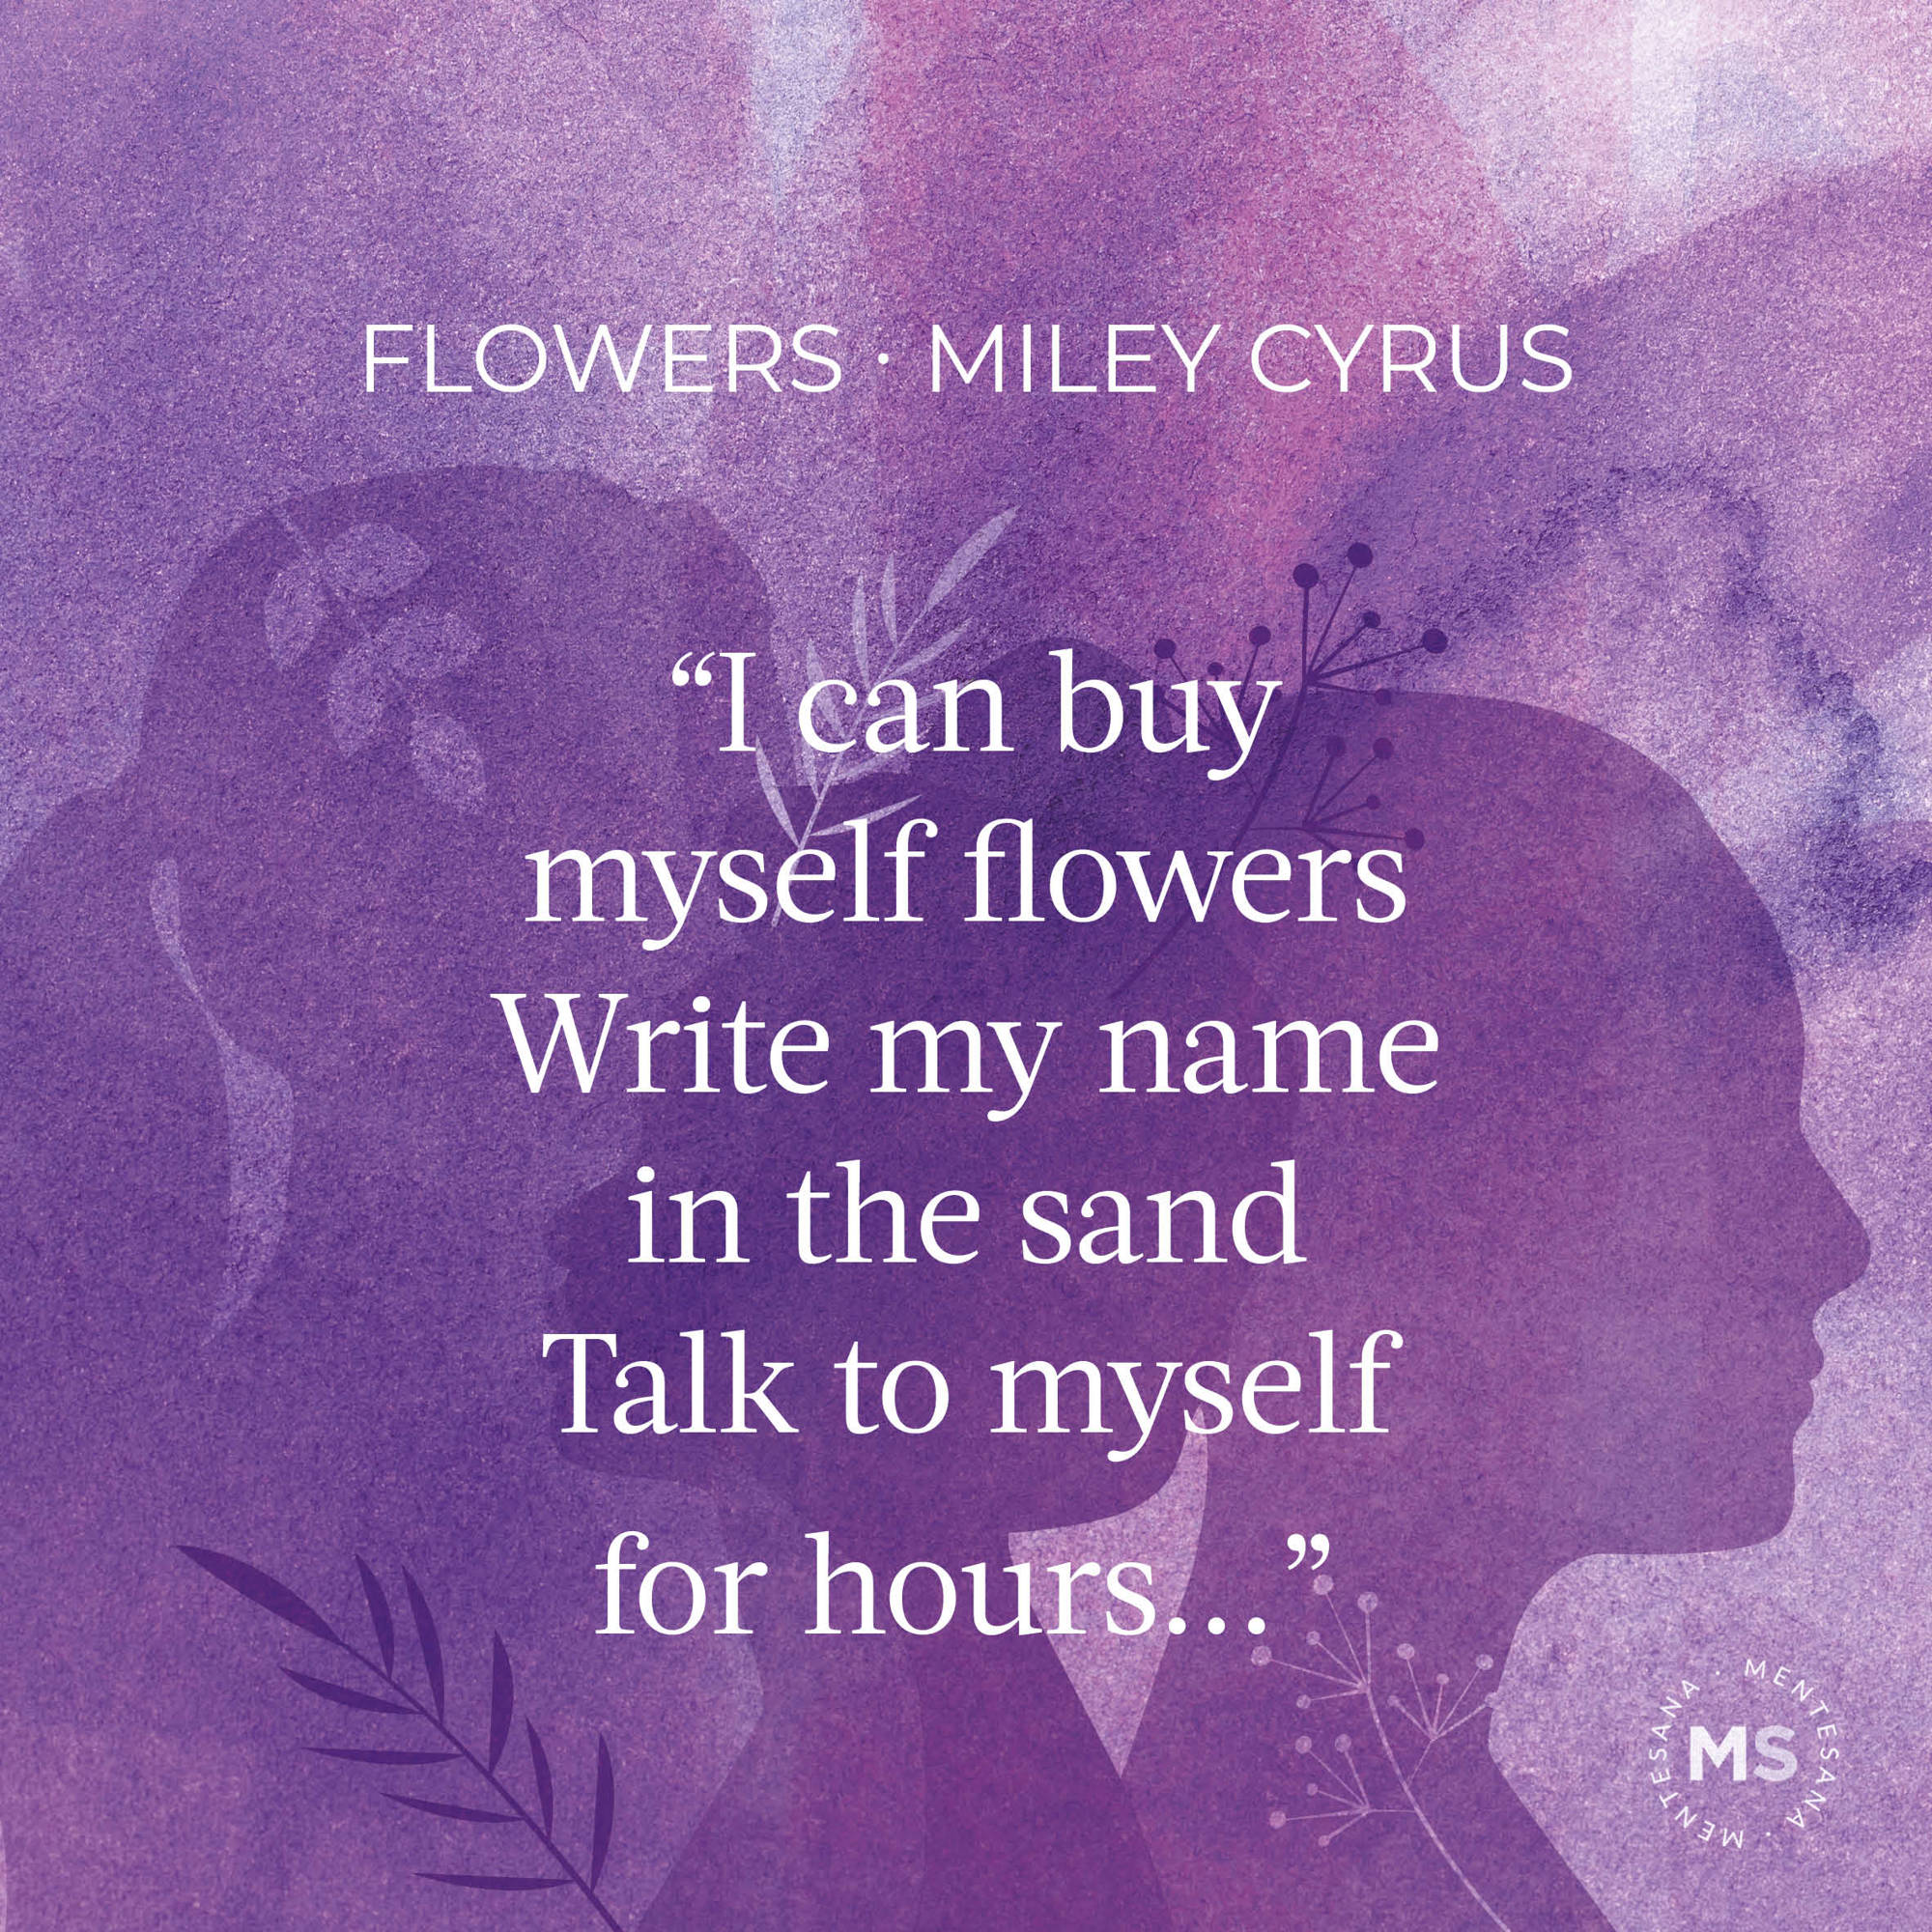 Flowers, de Miley Cyrus 